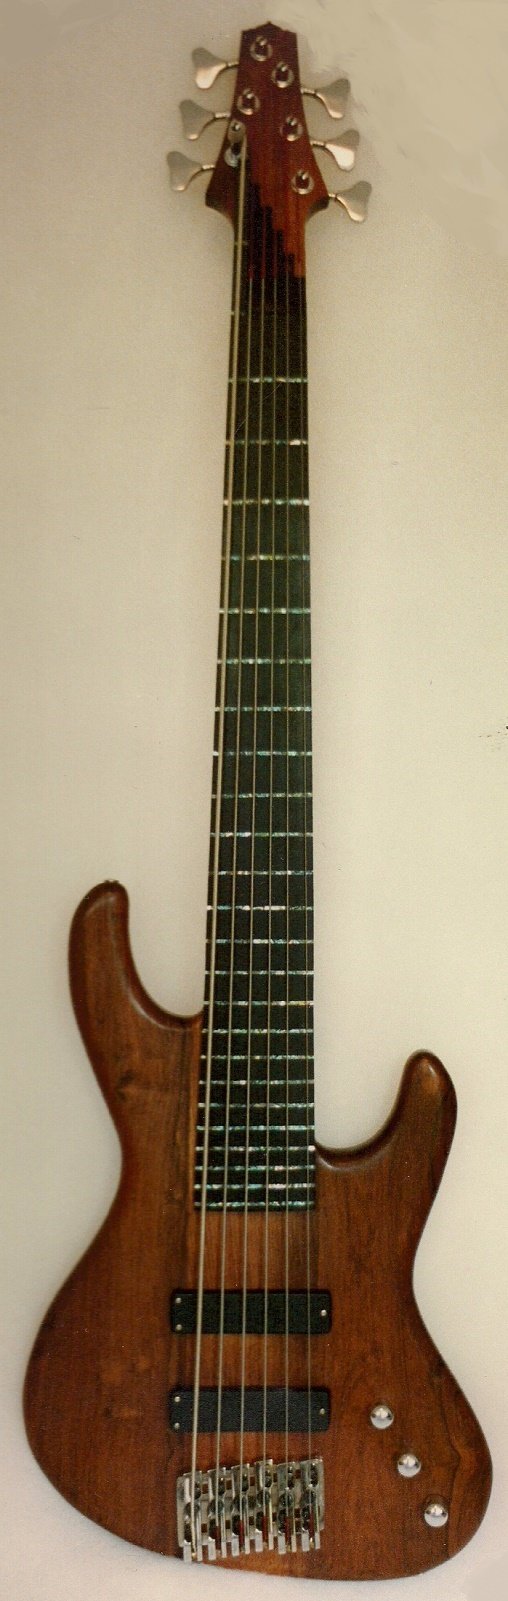 Jordan Rosewood Fretless Bass Guitar.jpg